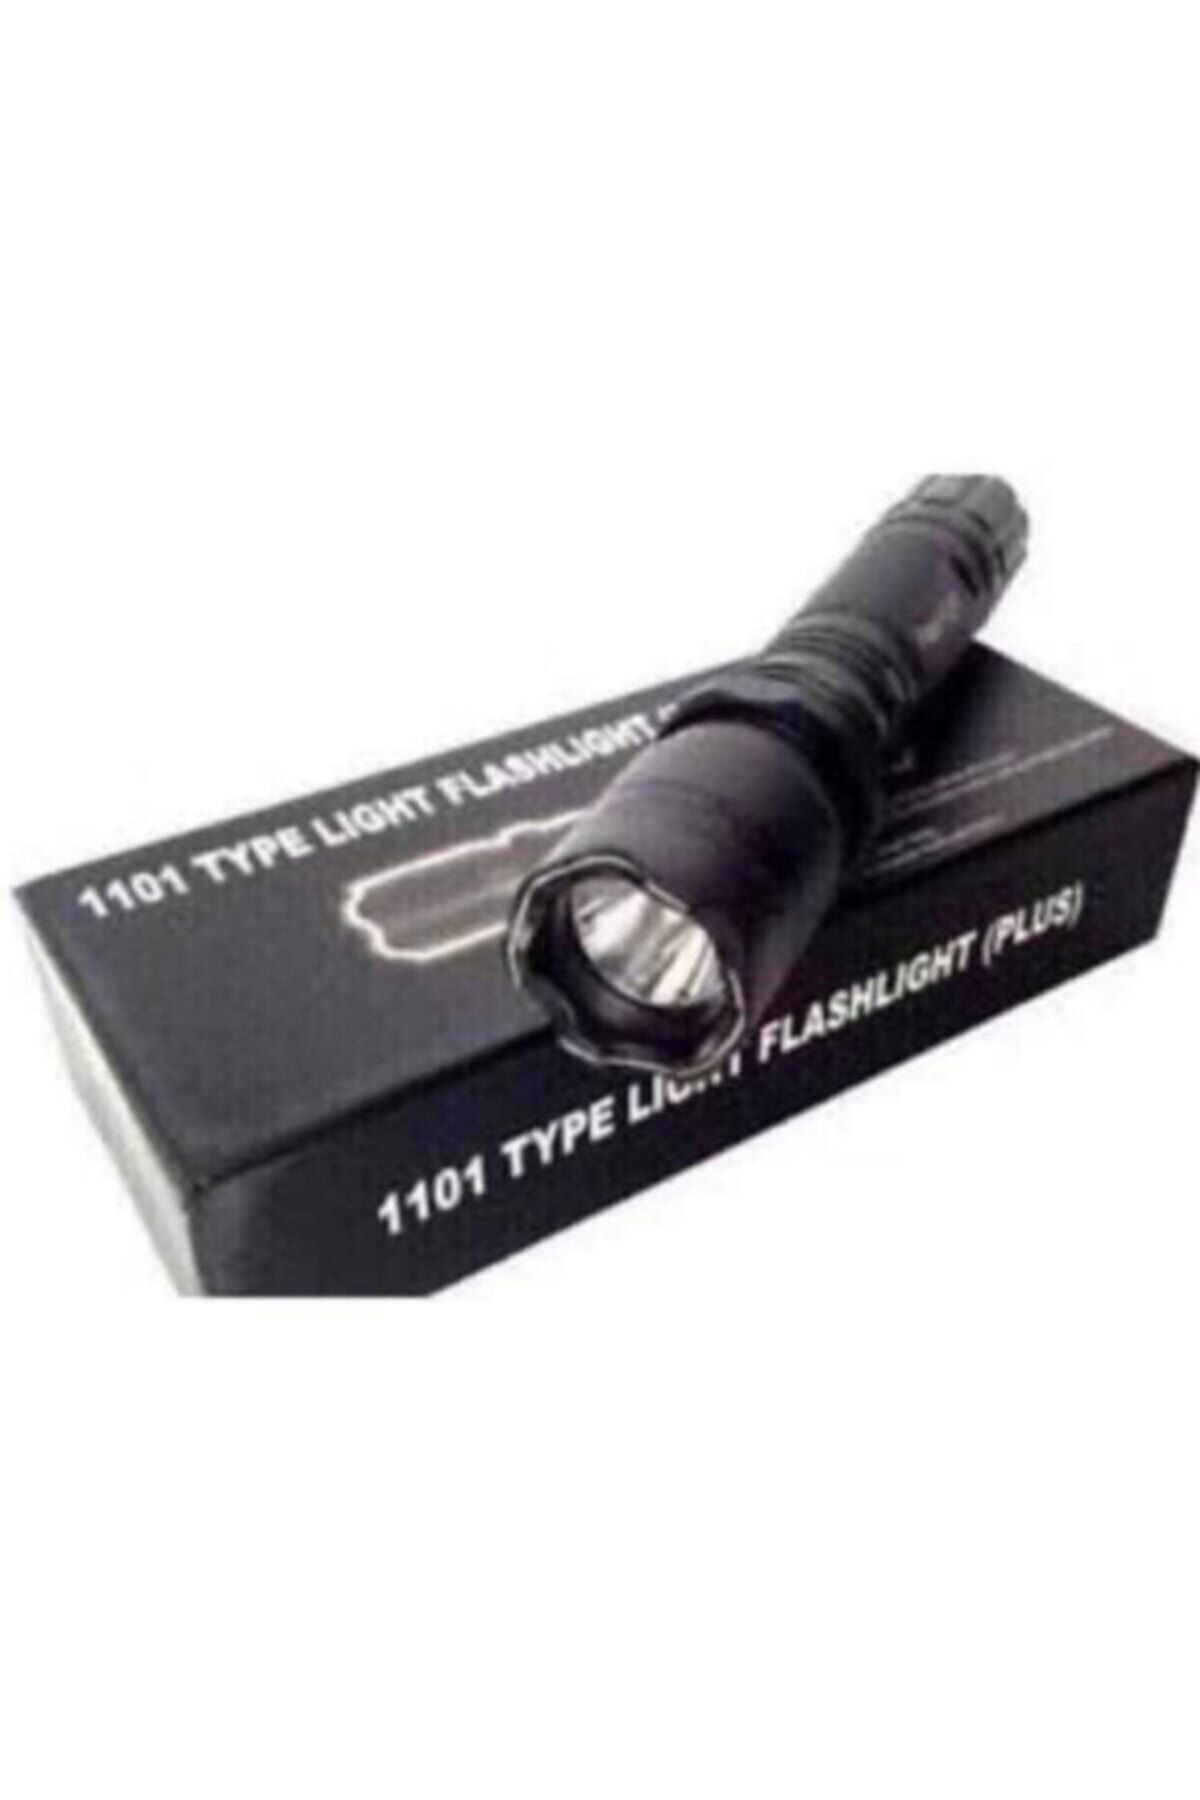 Flash 1101 Type Lıght El Feneri (Şok) Fiyat